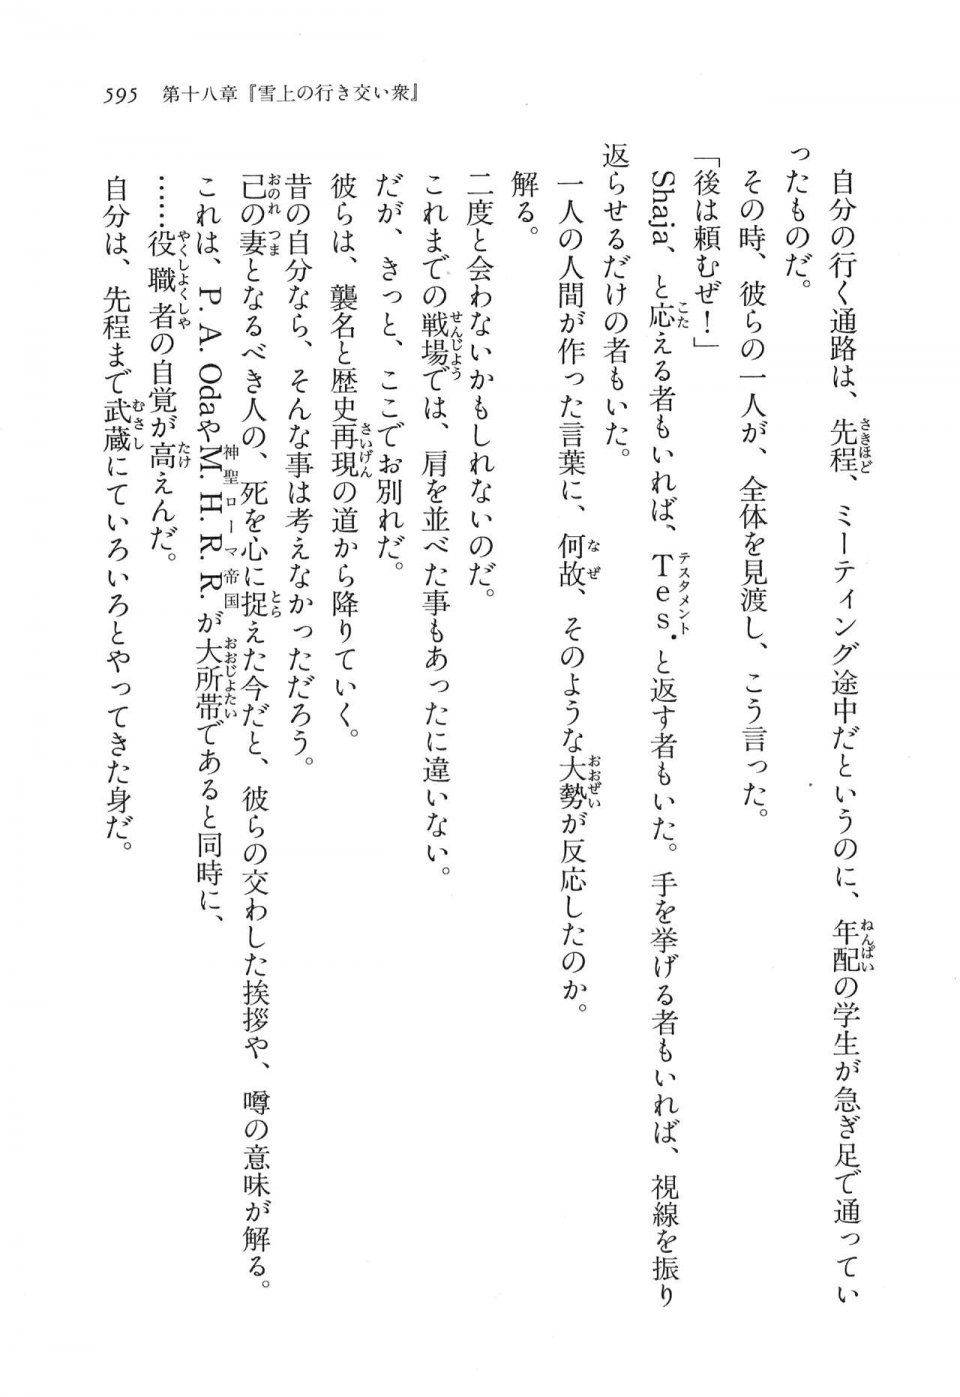 Kyoukai Senjou no Horizon LN Vol 16(7A) - Photo #595